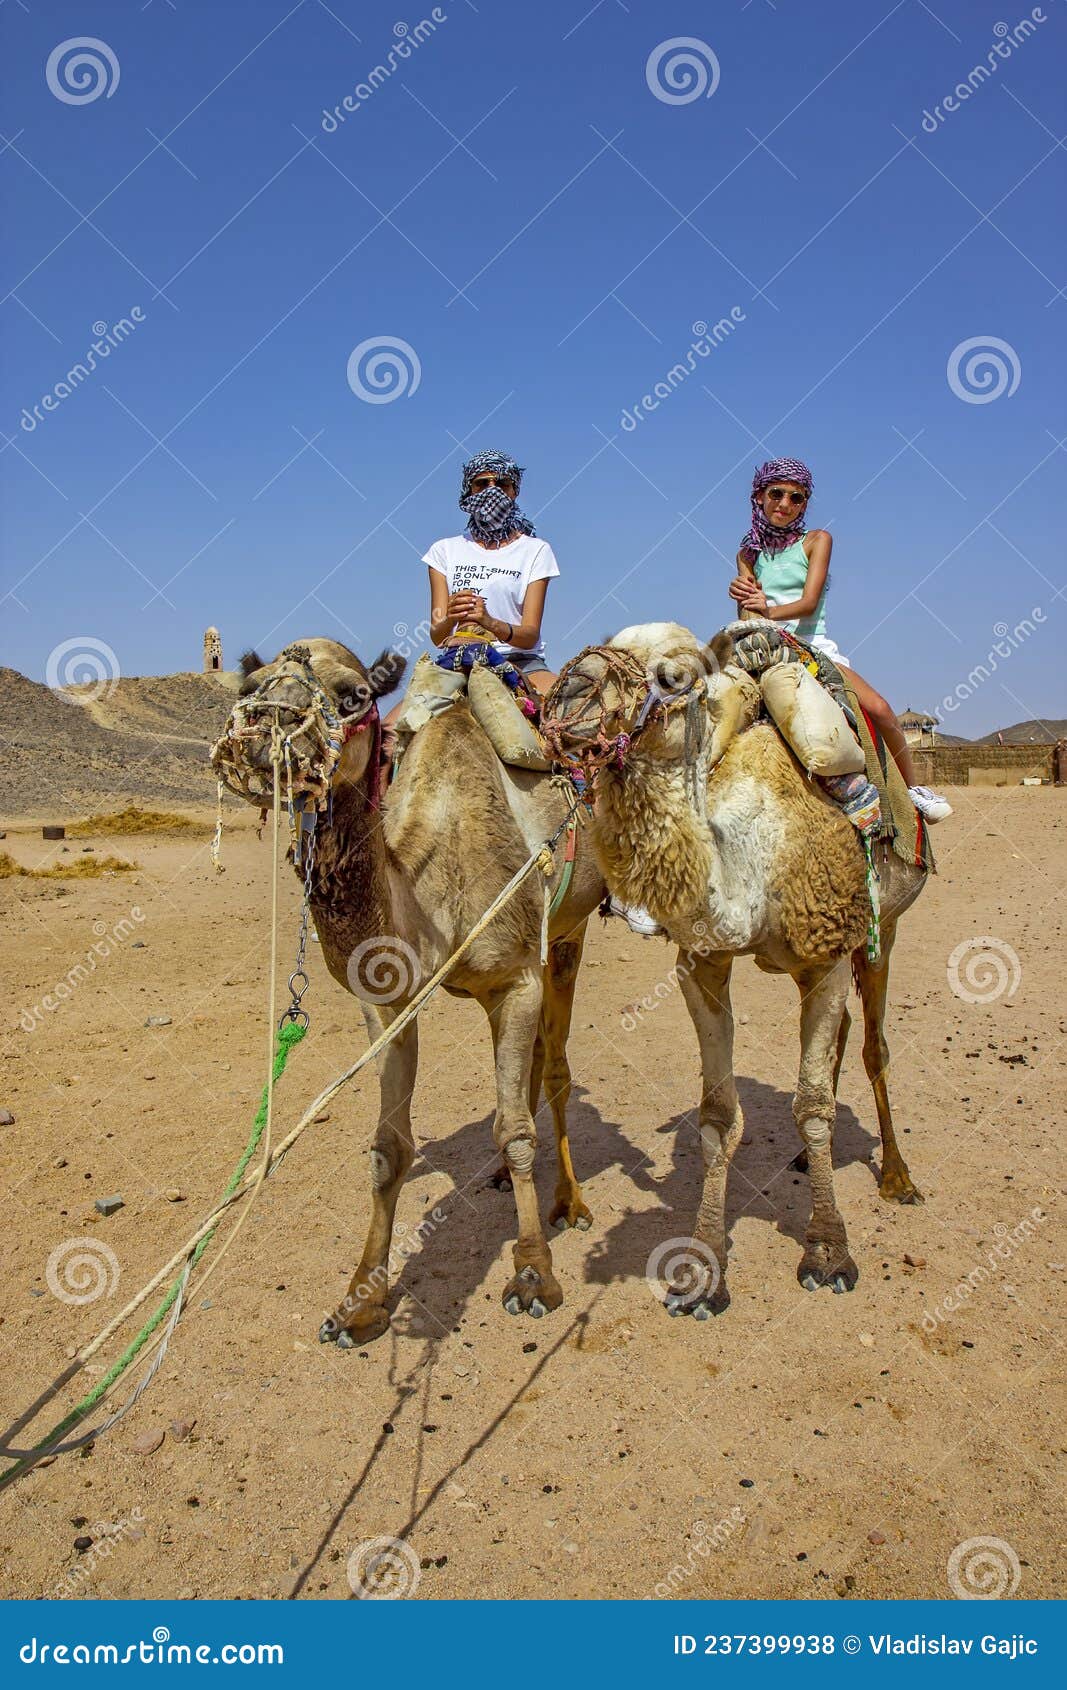 卡通简约骆驼和女孩装饰图片素材-编号33134821-图行天下